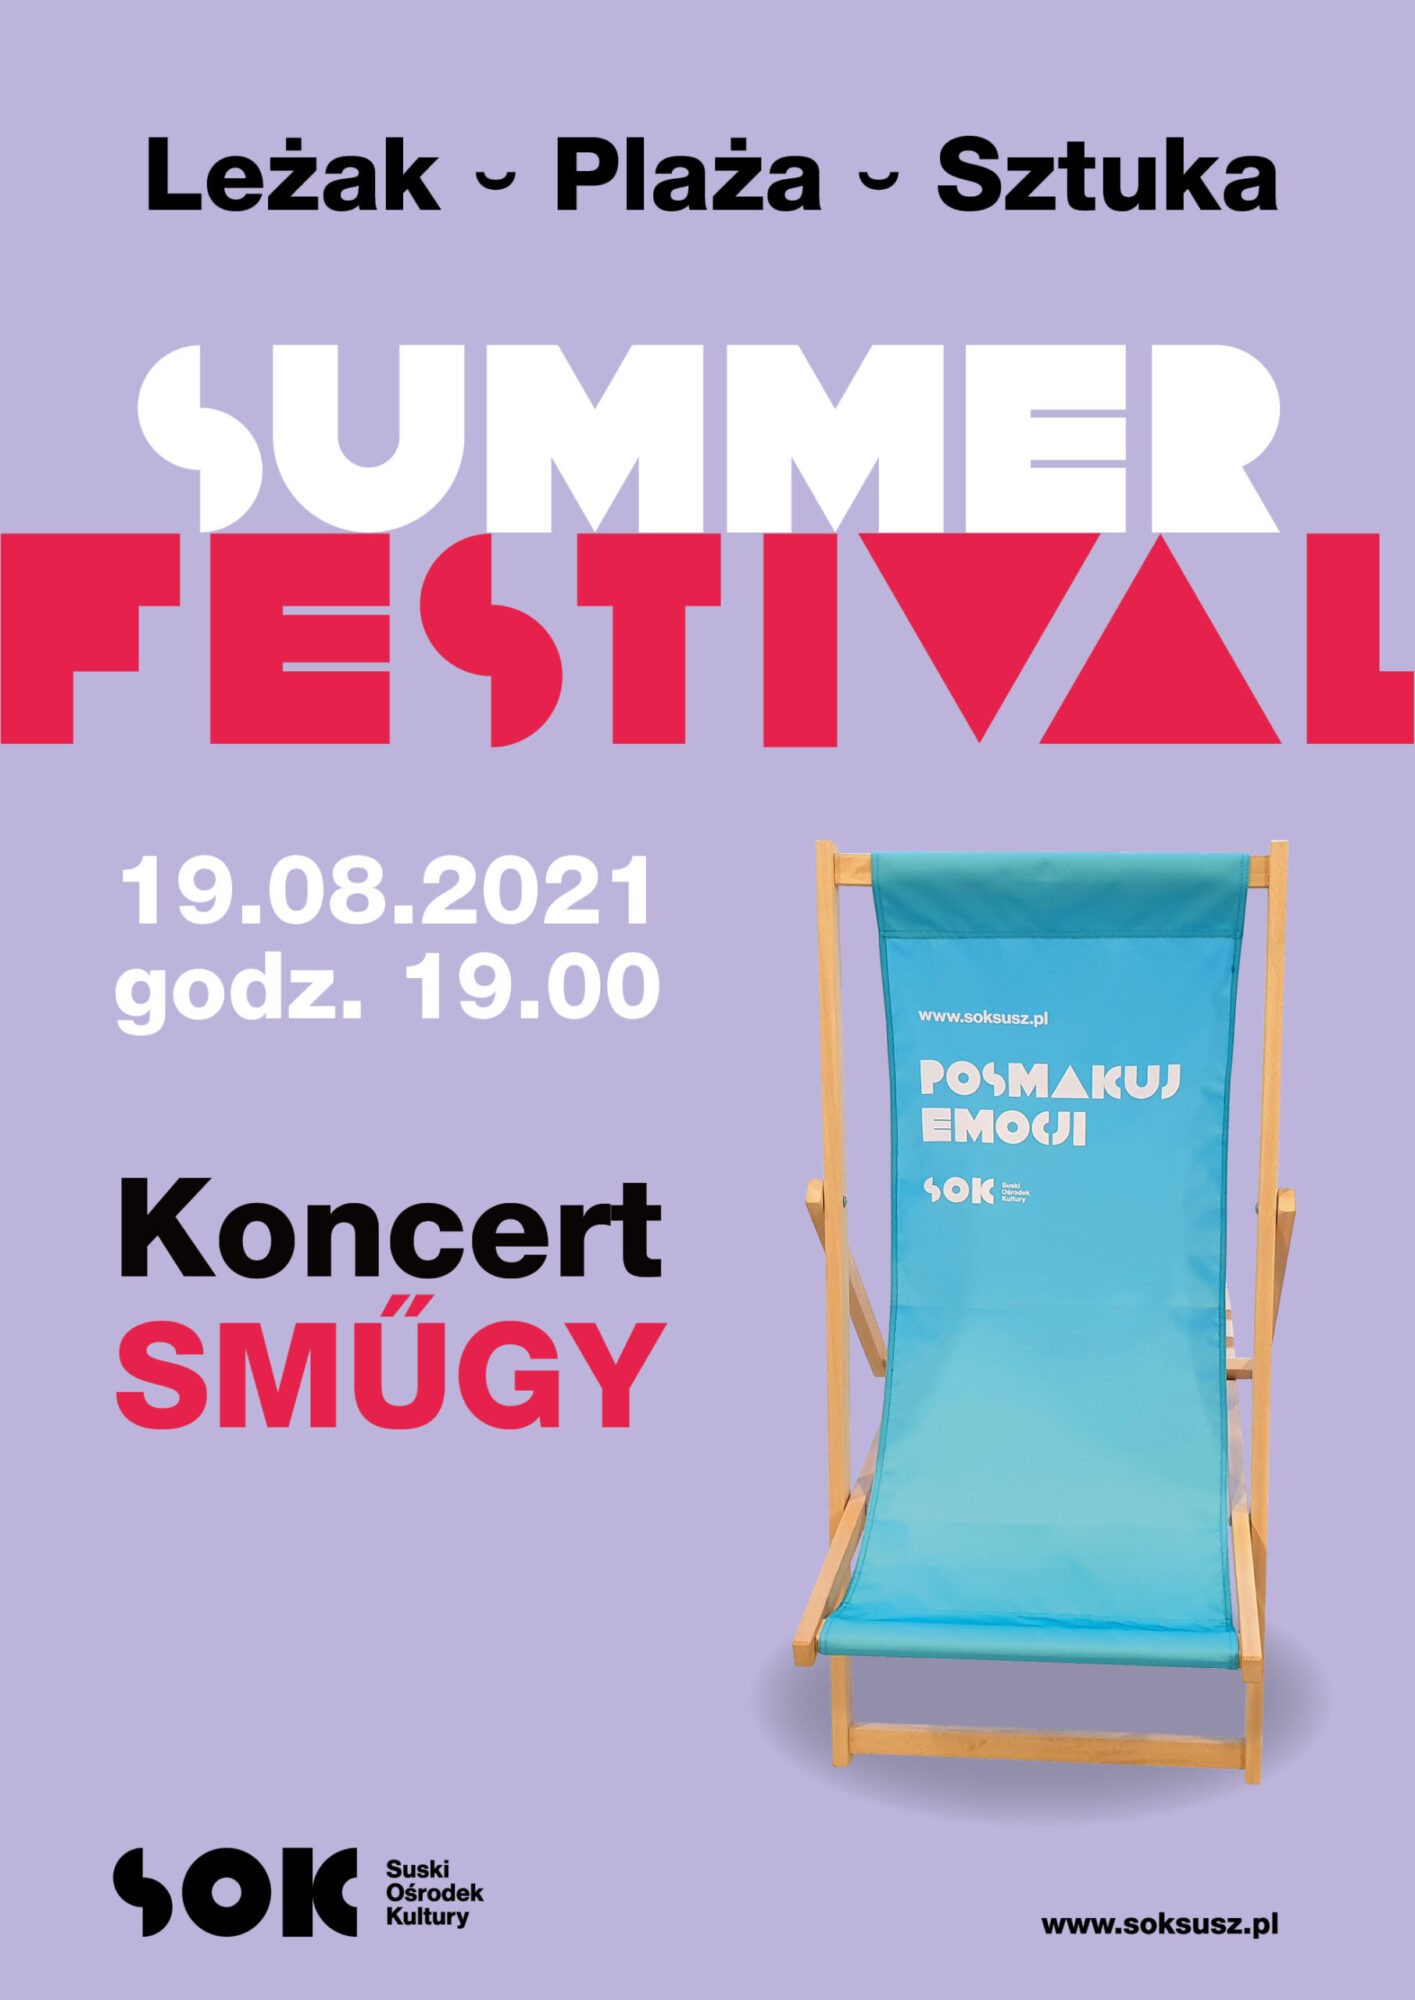 Koncert SMUGY / Summer Festival /